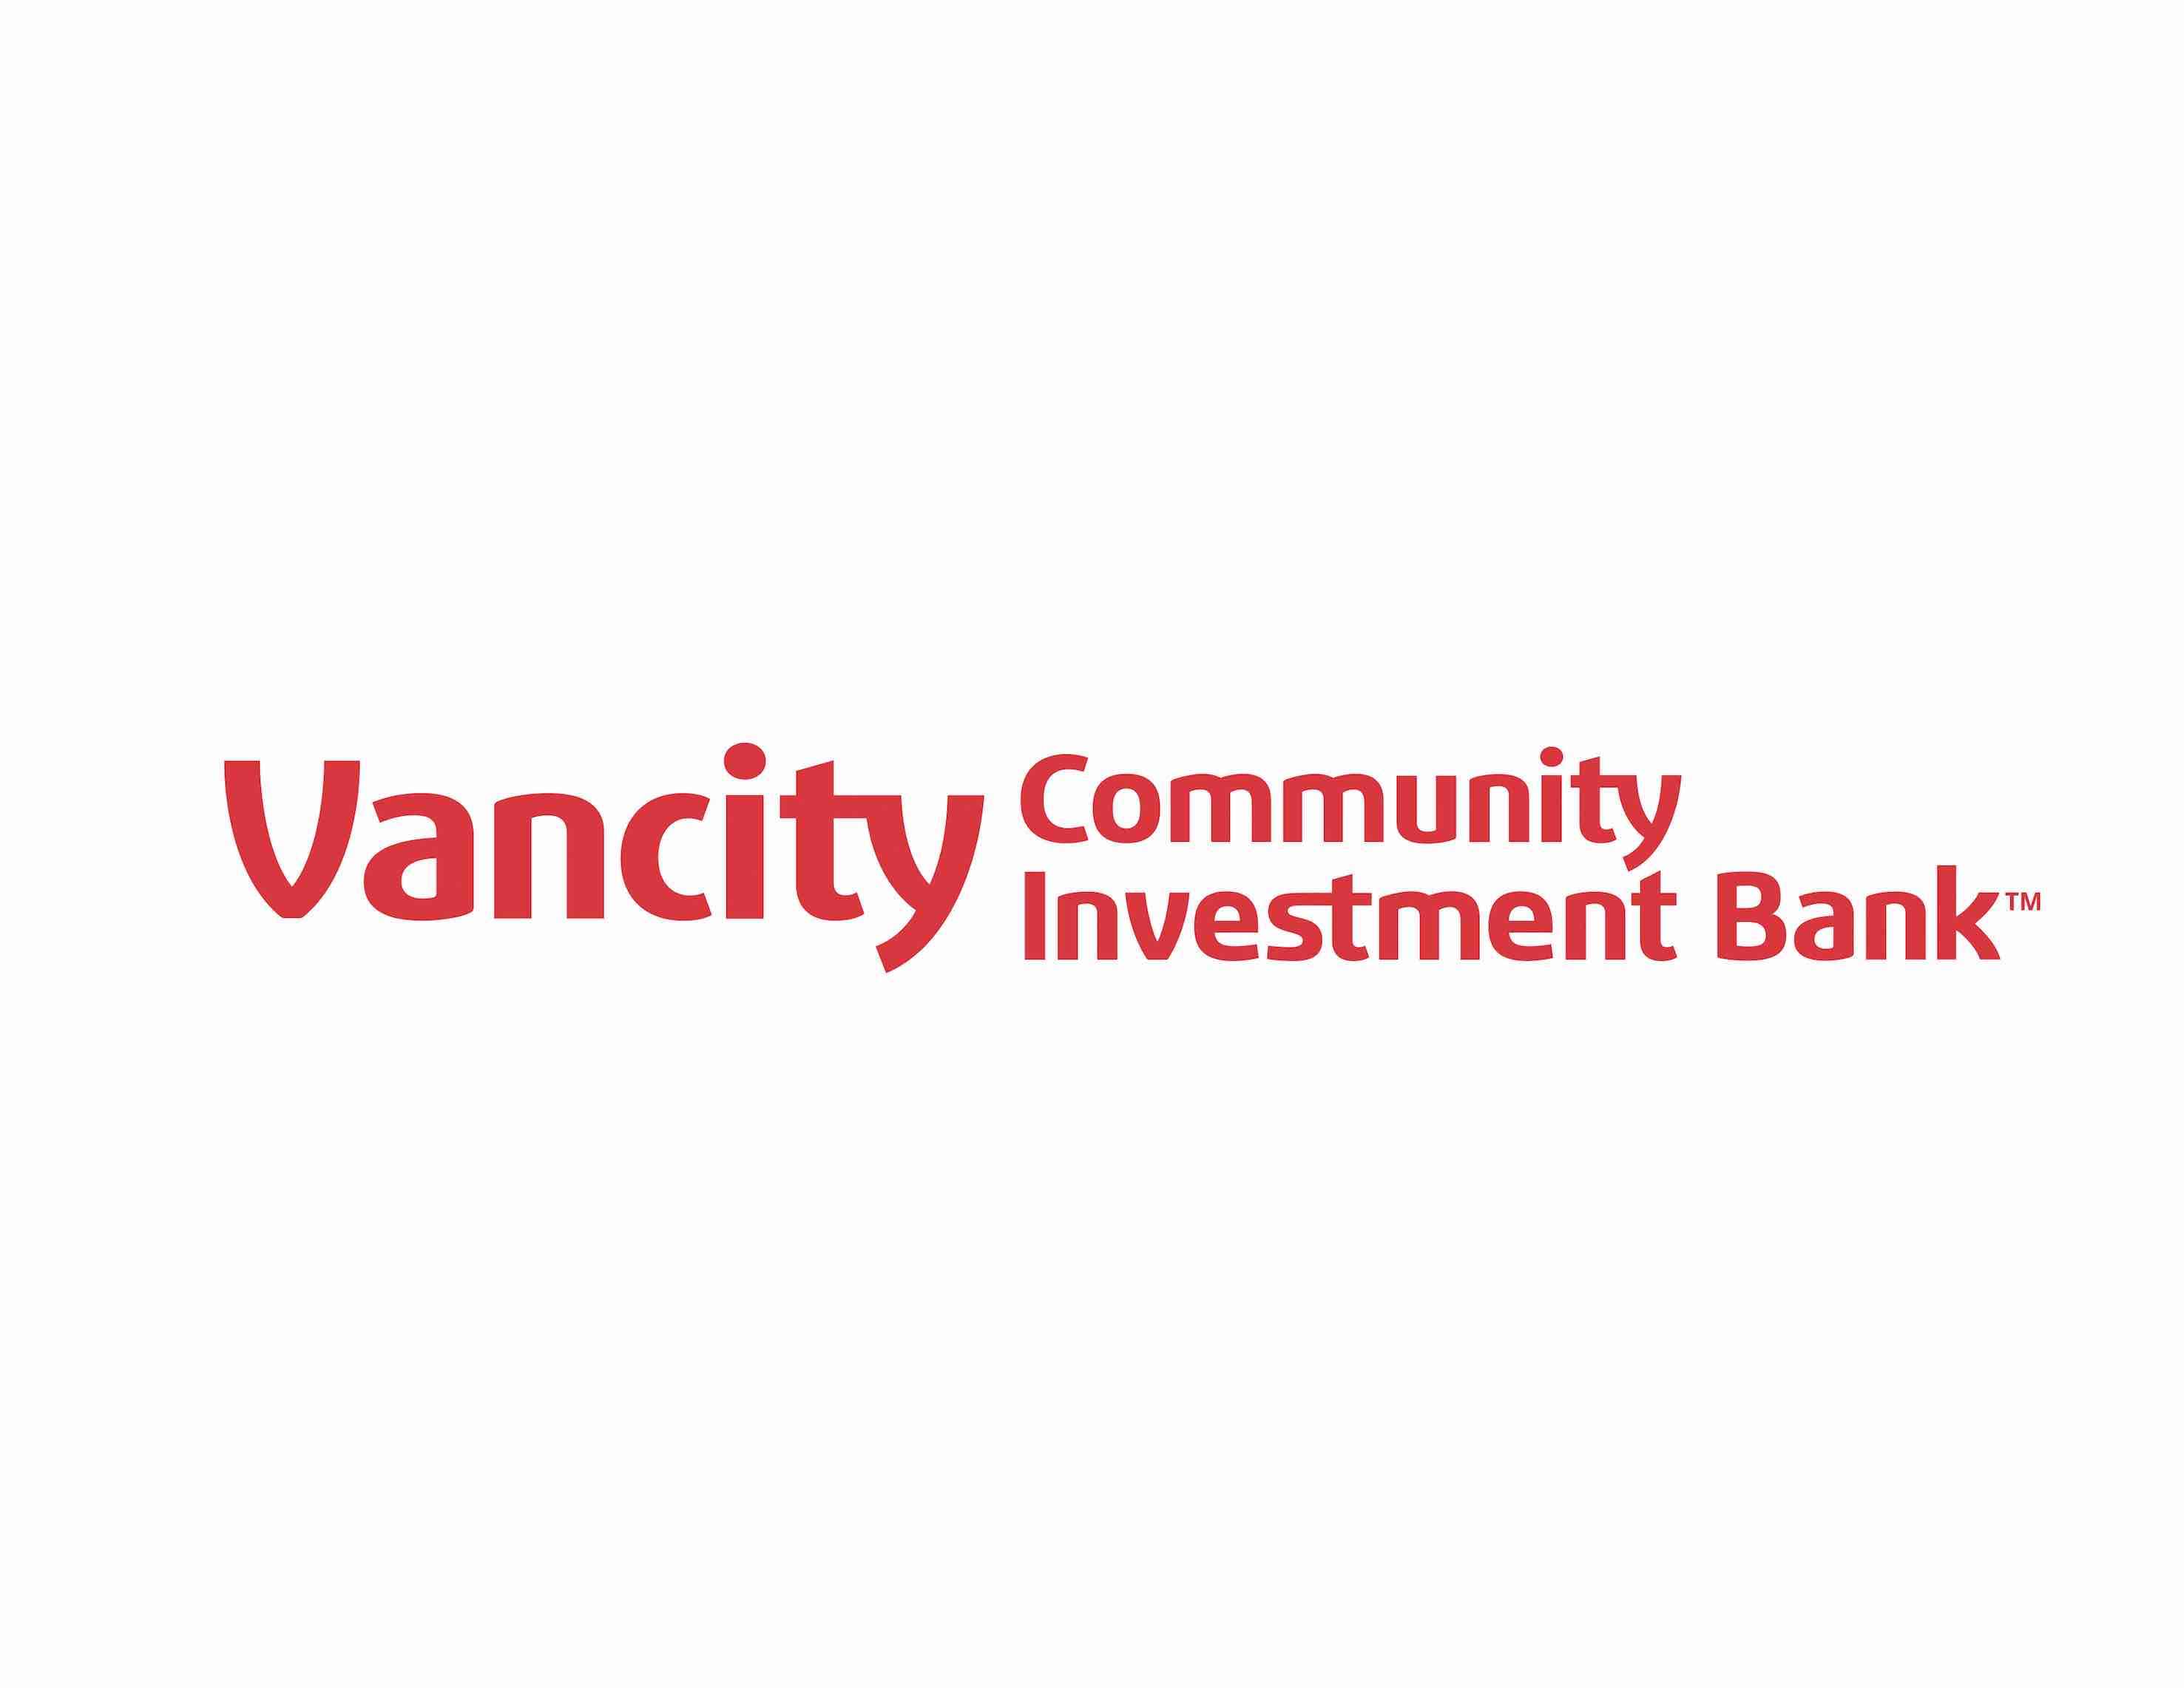 VancityCommunityInvestmentBank_TM_logo_1795_CMYK.jpg